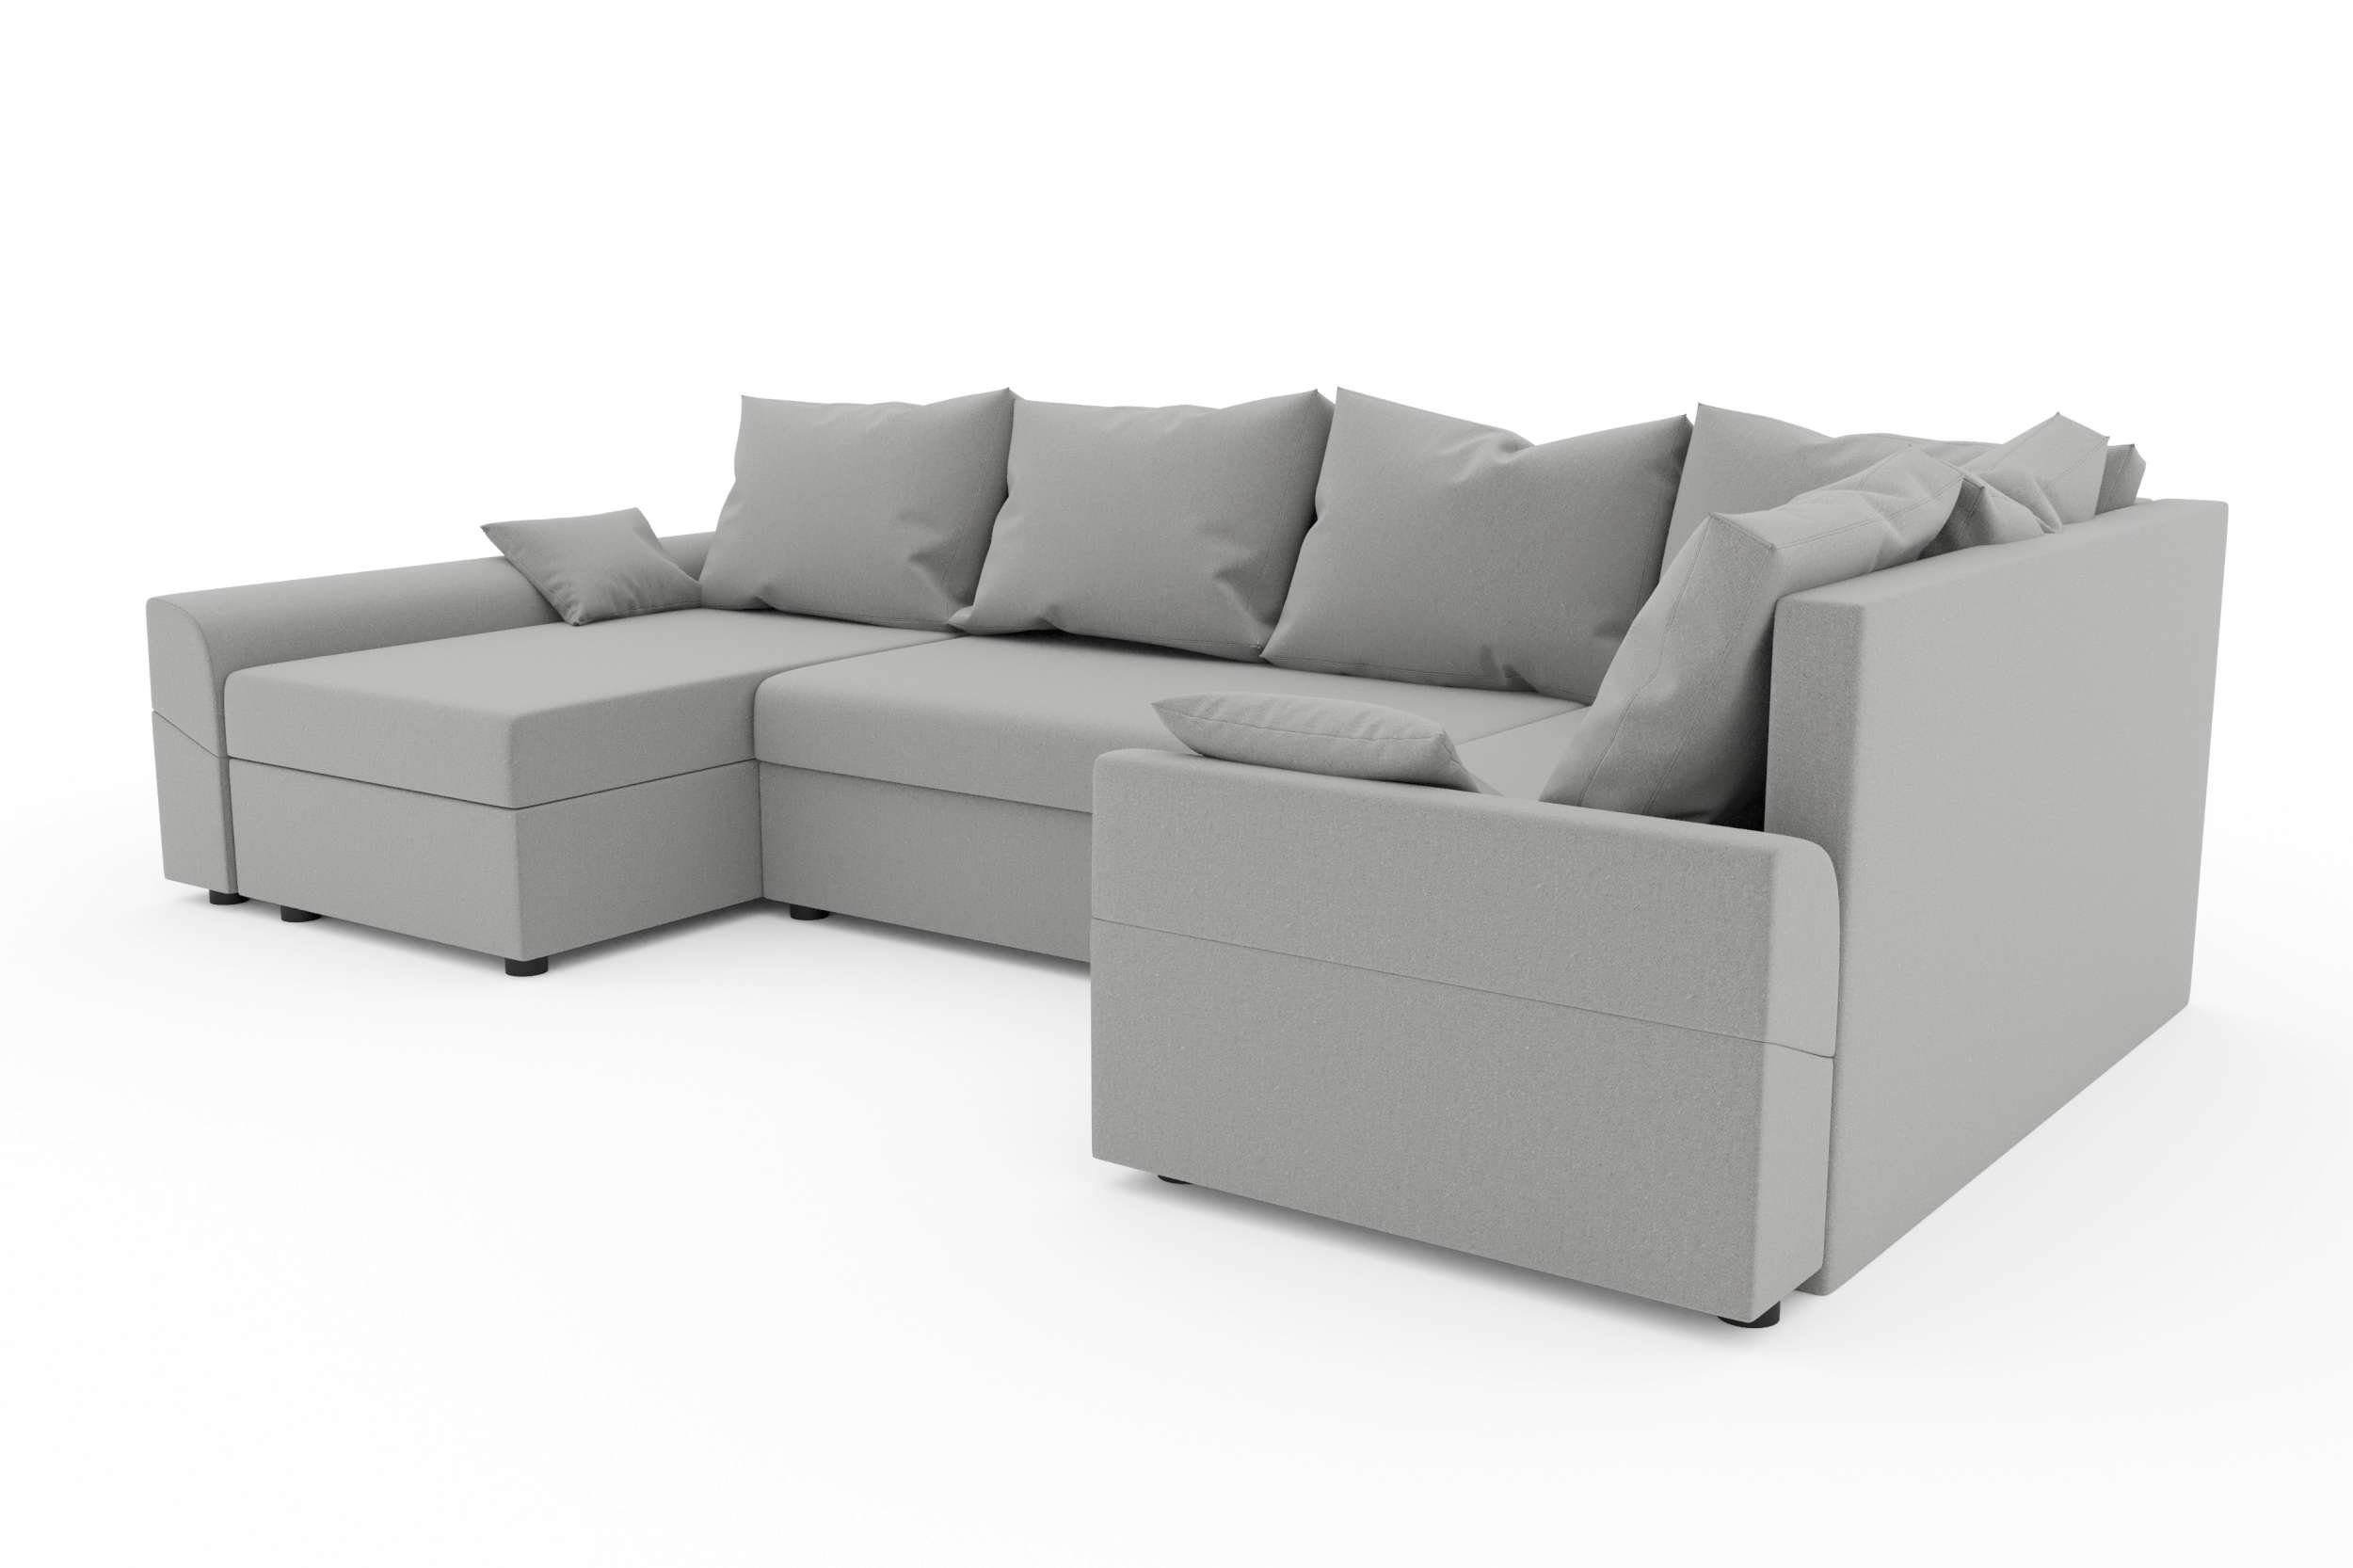 Wohnlandschaft Sitzkomfort, Eckcouch, U-Form, Bettkasten, Modern Bettfunktion, Design Stylefy Bailey, mit mit Sofa,